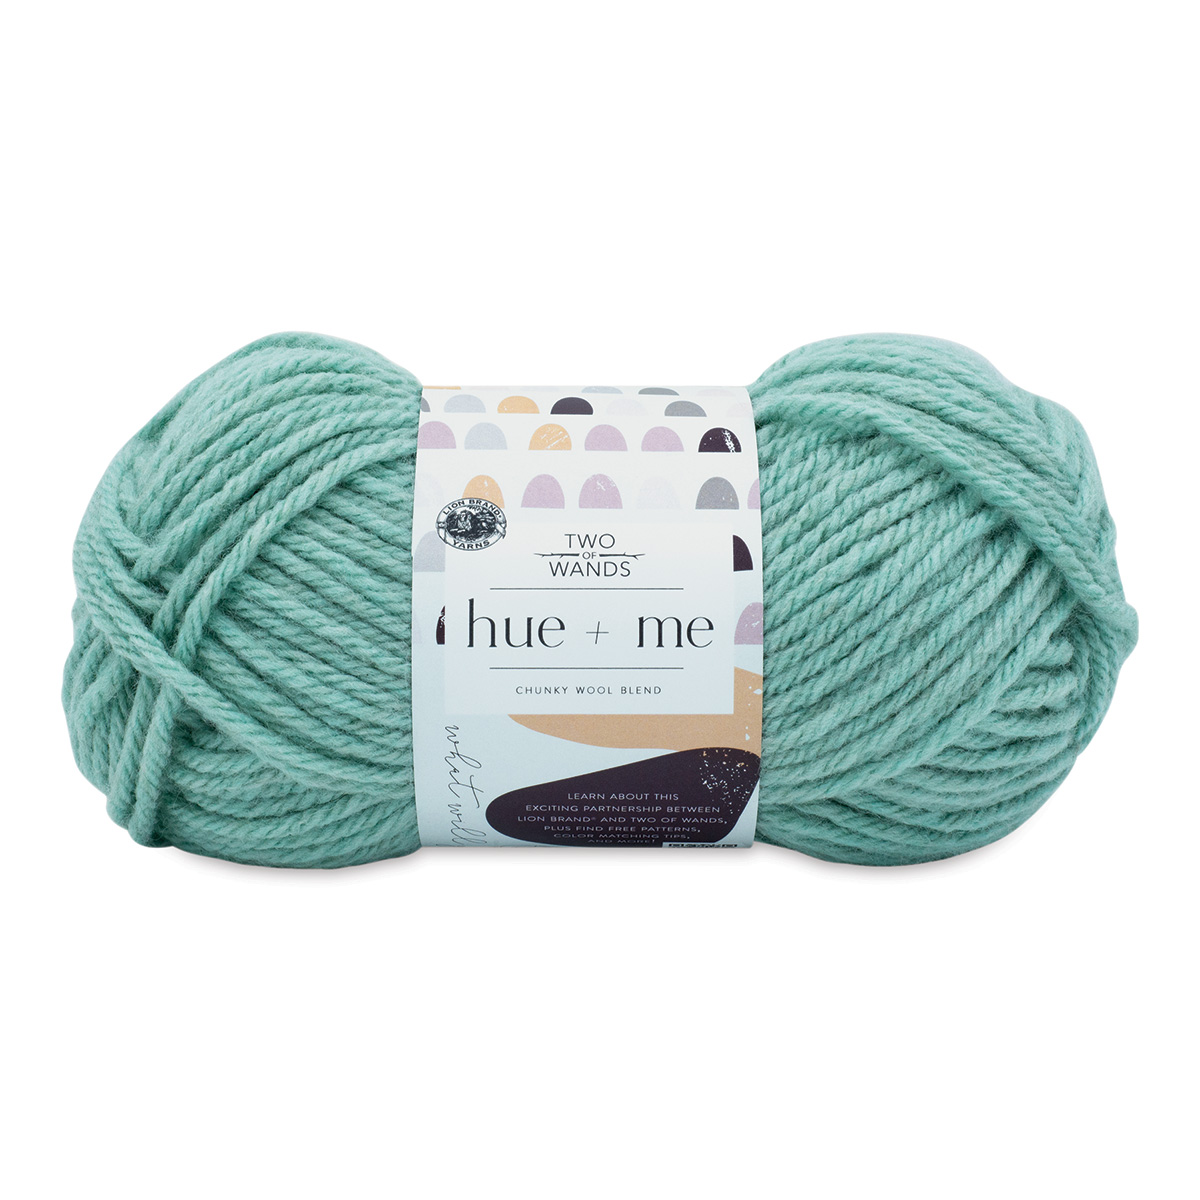 Hue + Me Yarn - Arrowwood  Yarn, Hue, Lion brand yarn